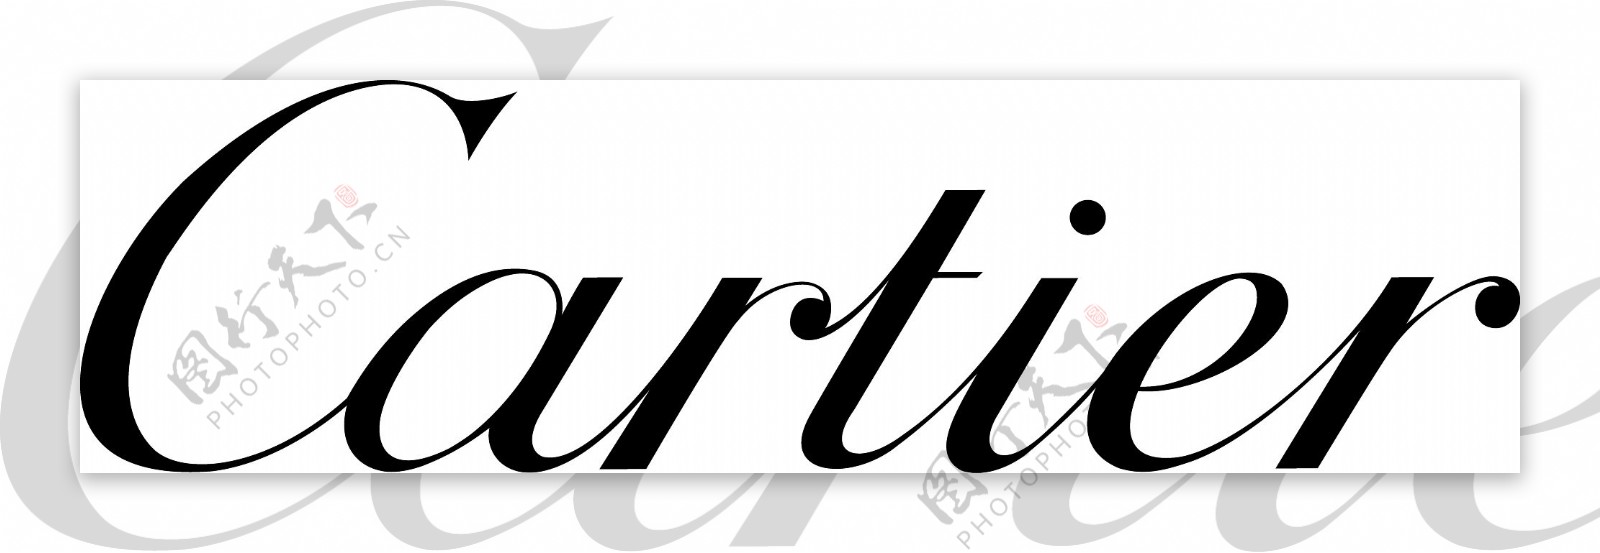 Cartierlogo标志矢量素材